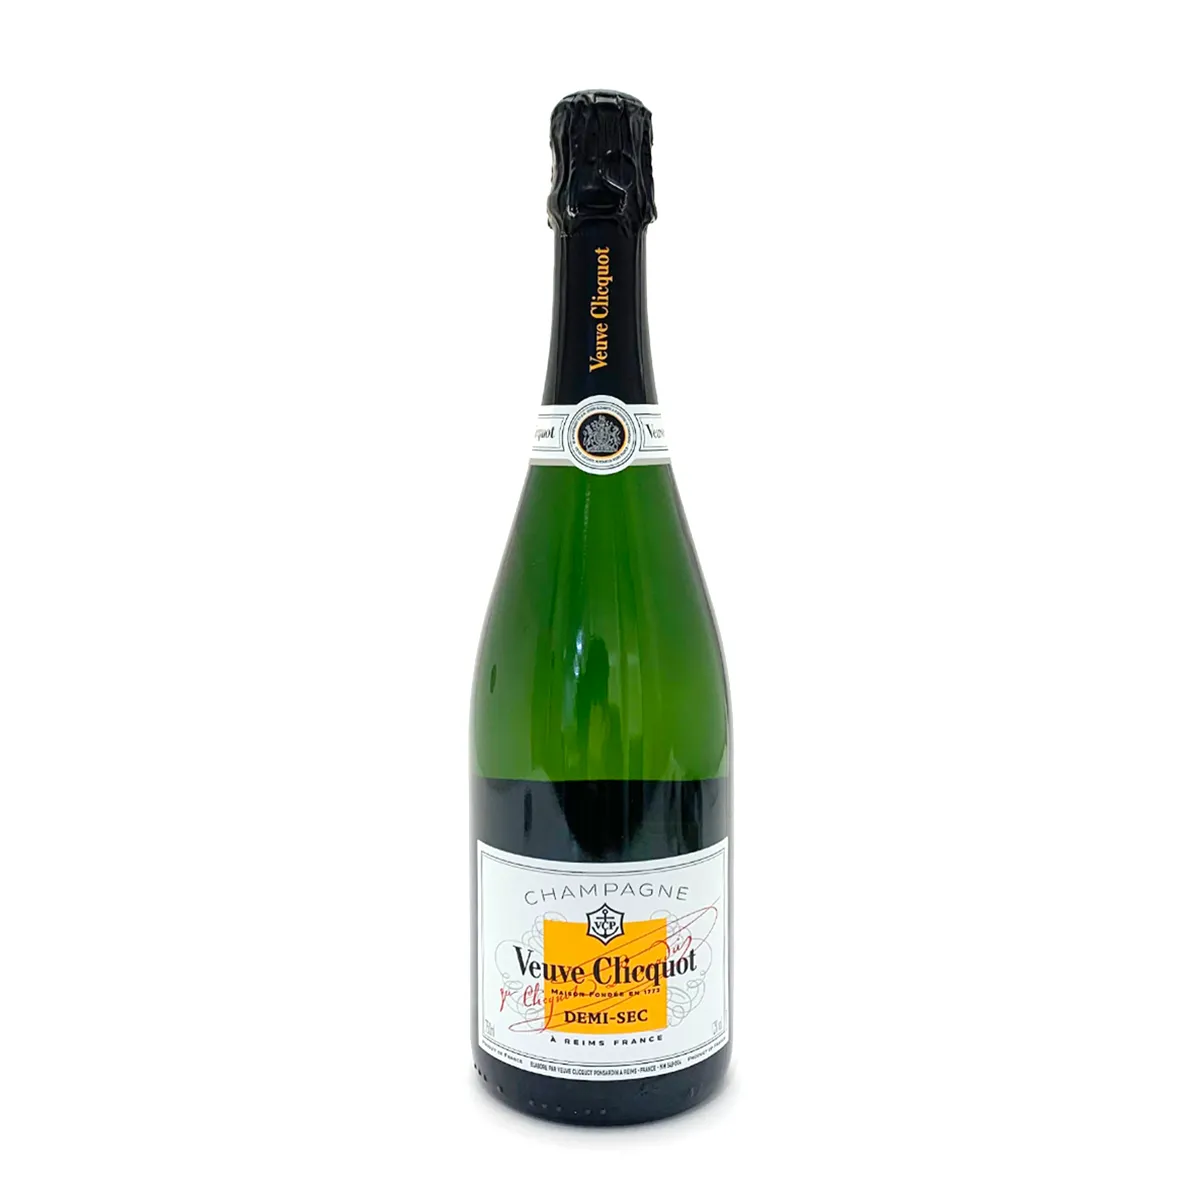 ヴーヴ クリコ(Veuve Clicquot) ドゥミ セック(DEMI SEC) ホワイトラベル シャンパン 750ml 12度